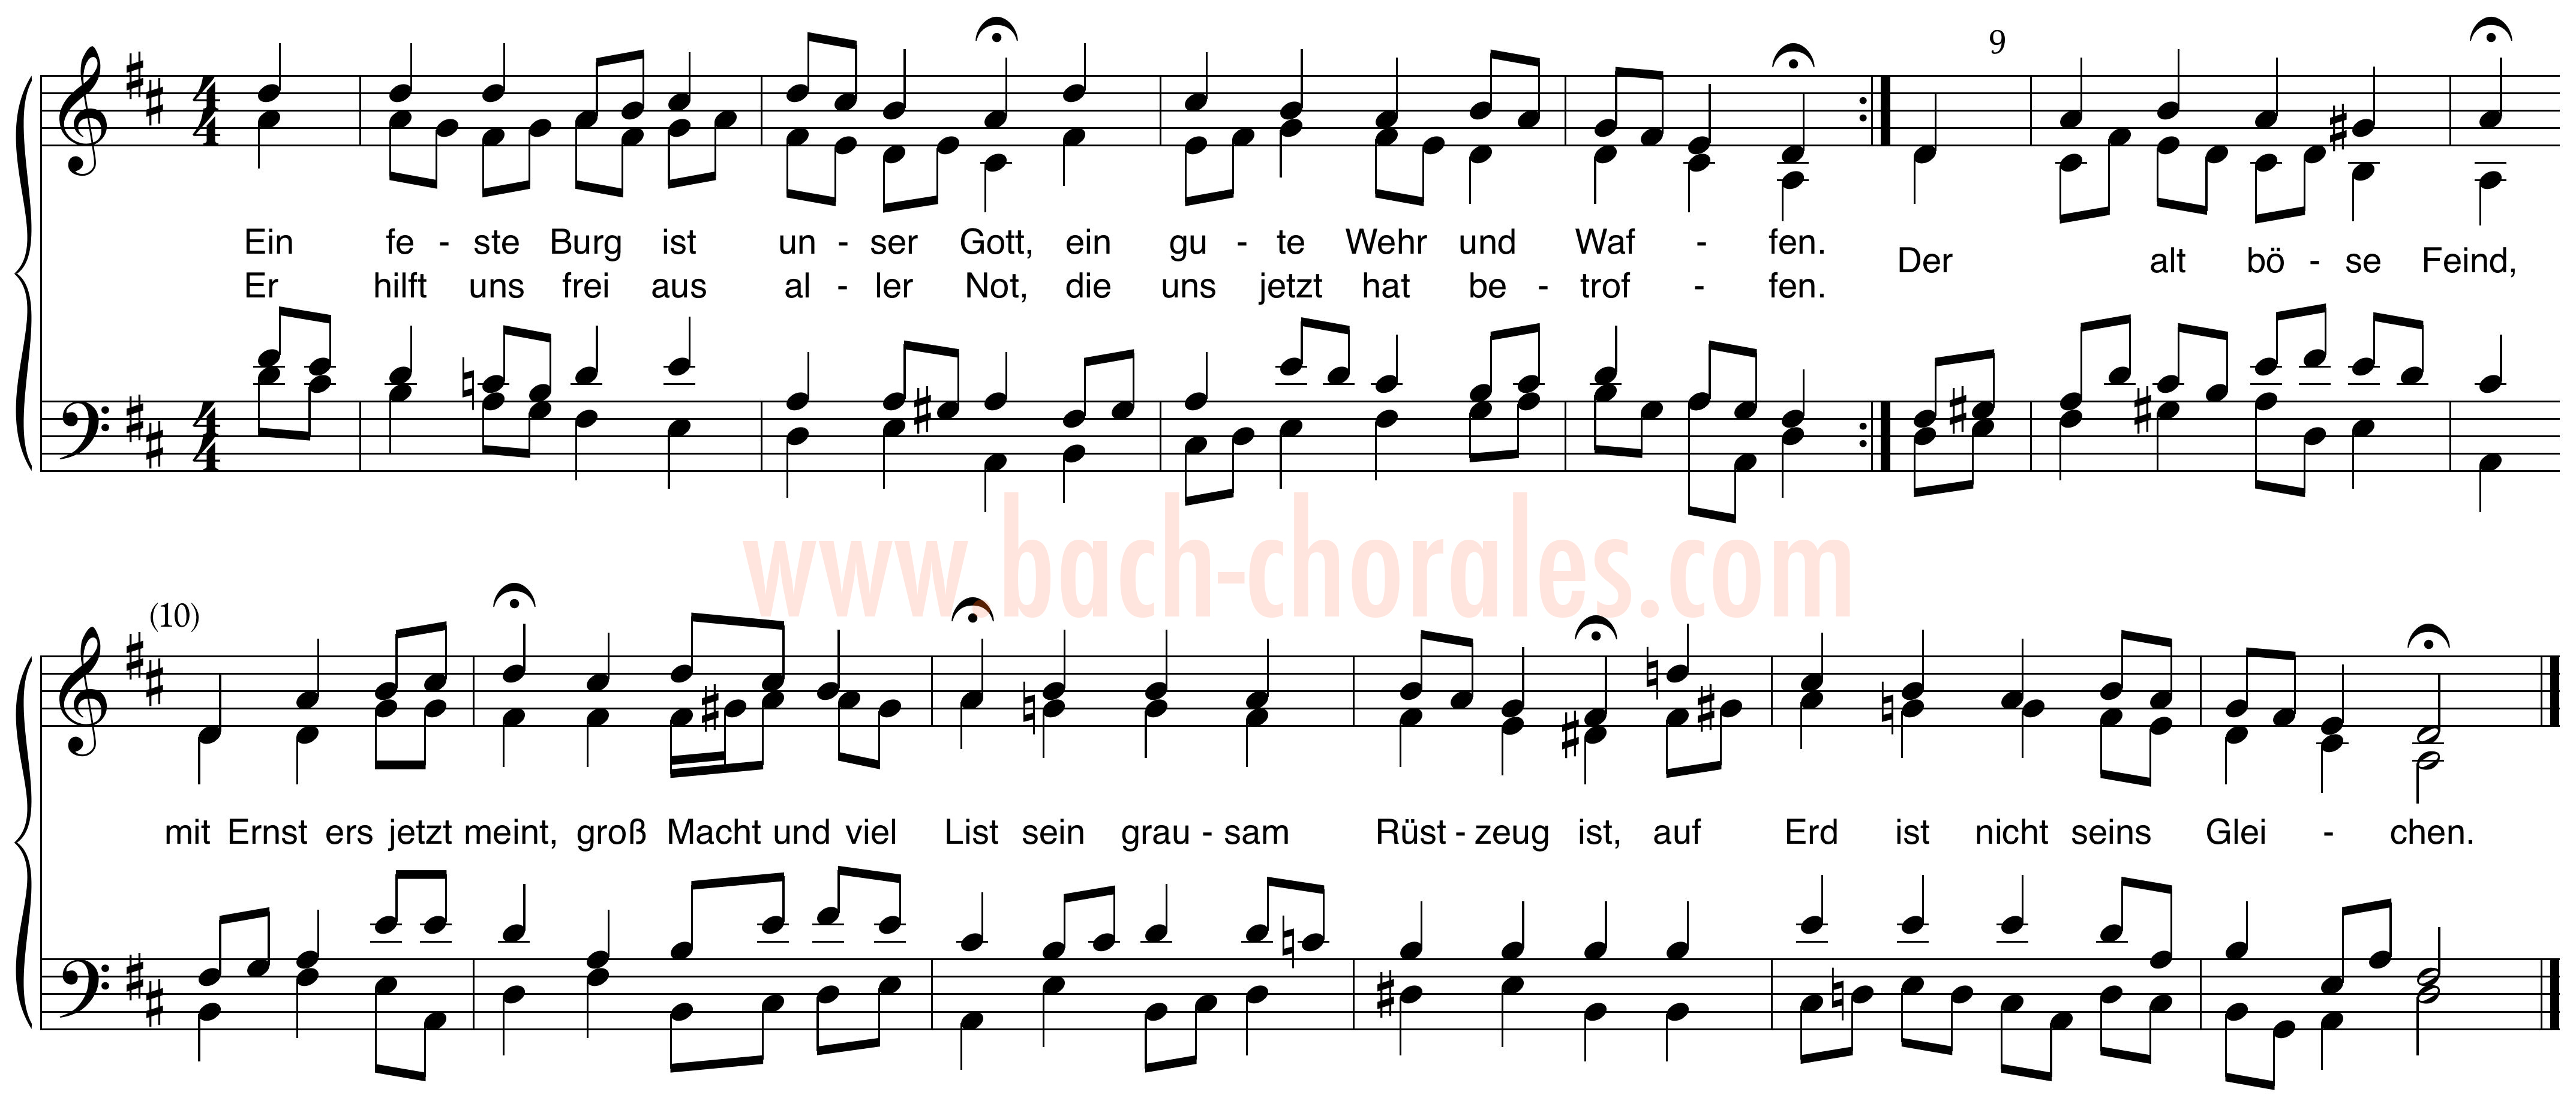 notenbeeld BWV 303 op https://www.bach-chorales.com/